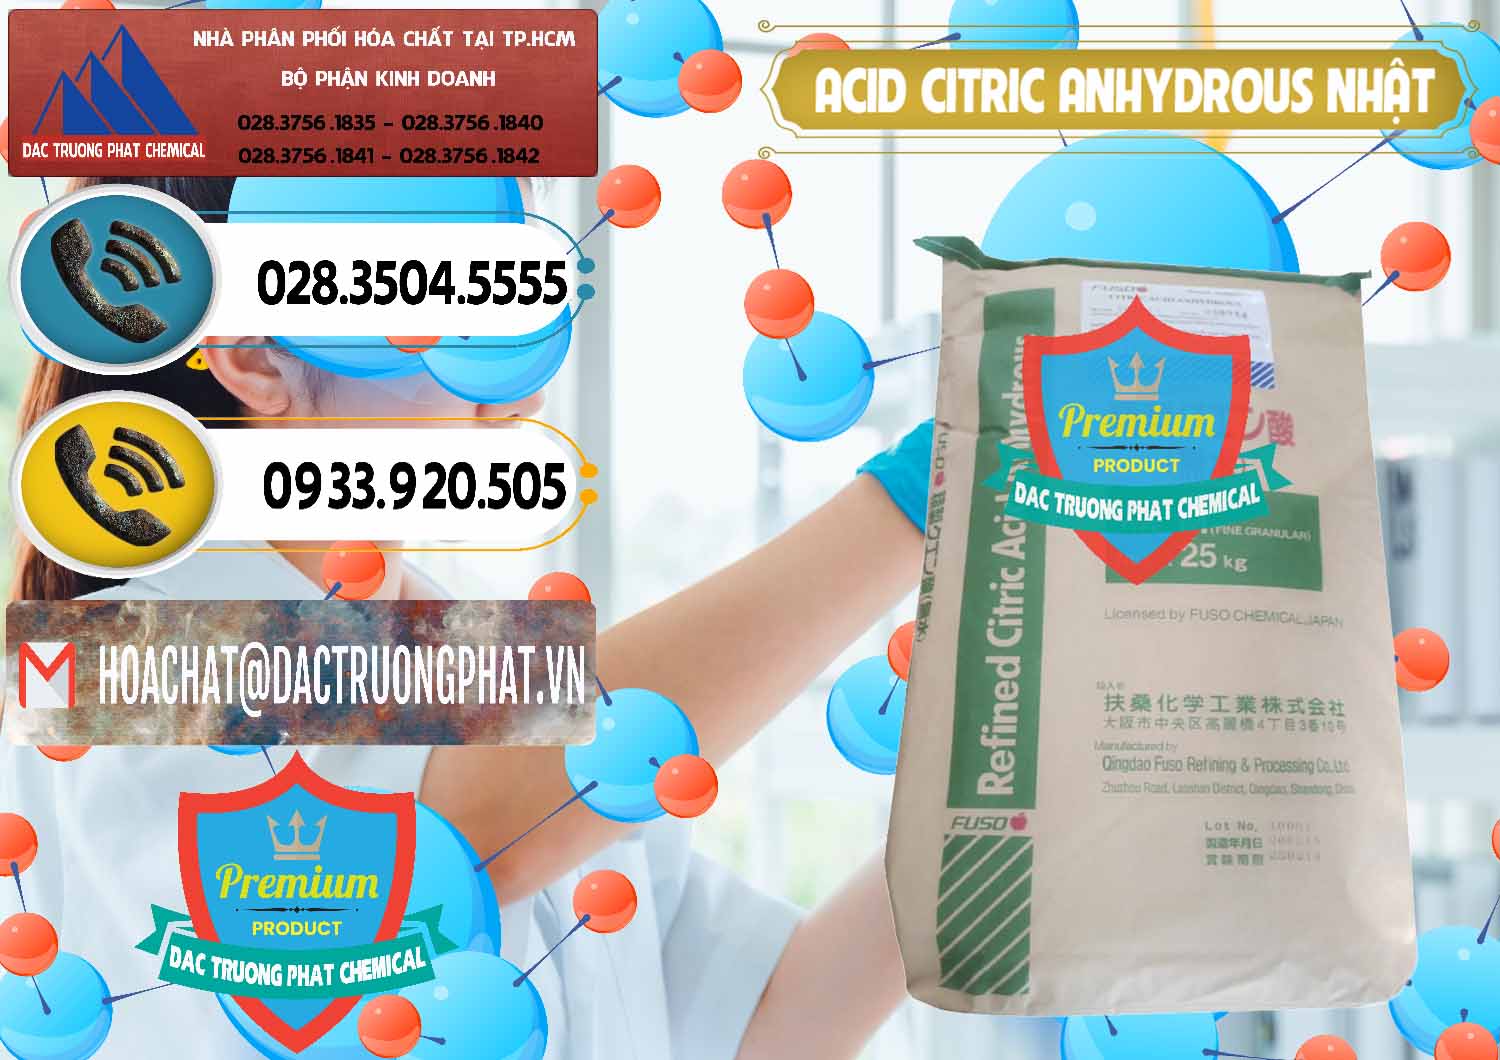 Công ty bán & phân phối Acid Citric - Axit Citric Anhydrous FUSO Nhật Japan - 0439 - Nhà cung cấp & phân phối hóa chất tại TP.HCM - hoachatdetnhuom.vn